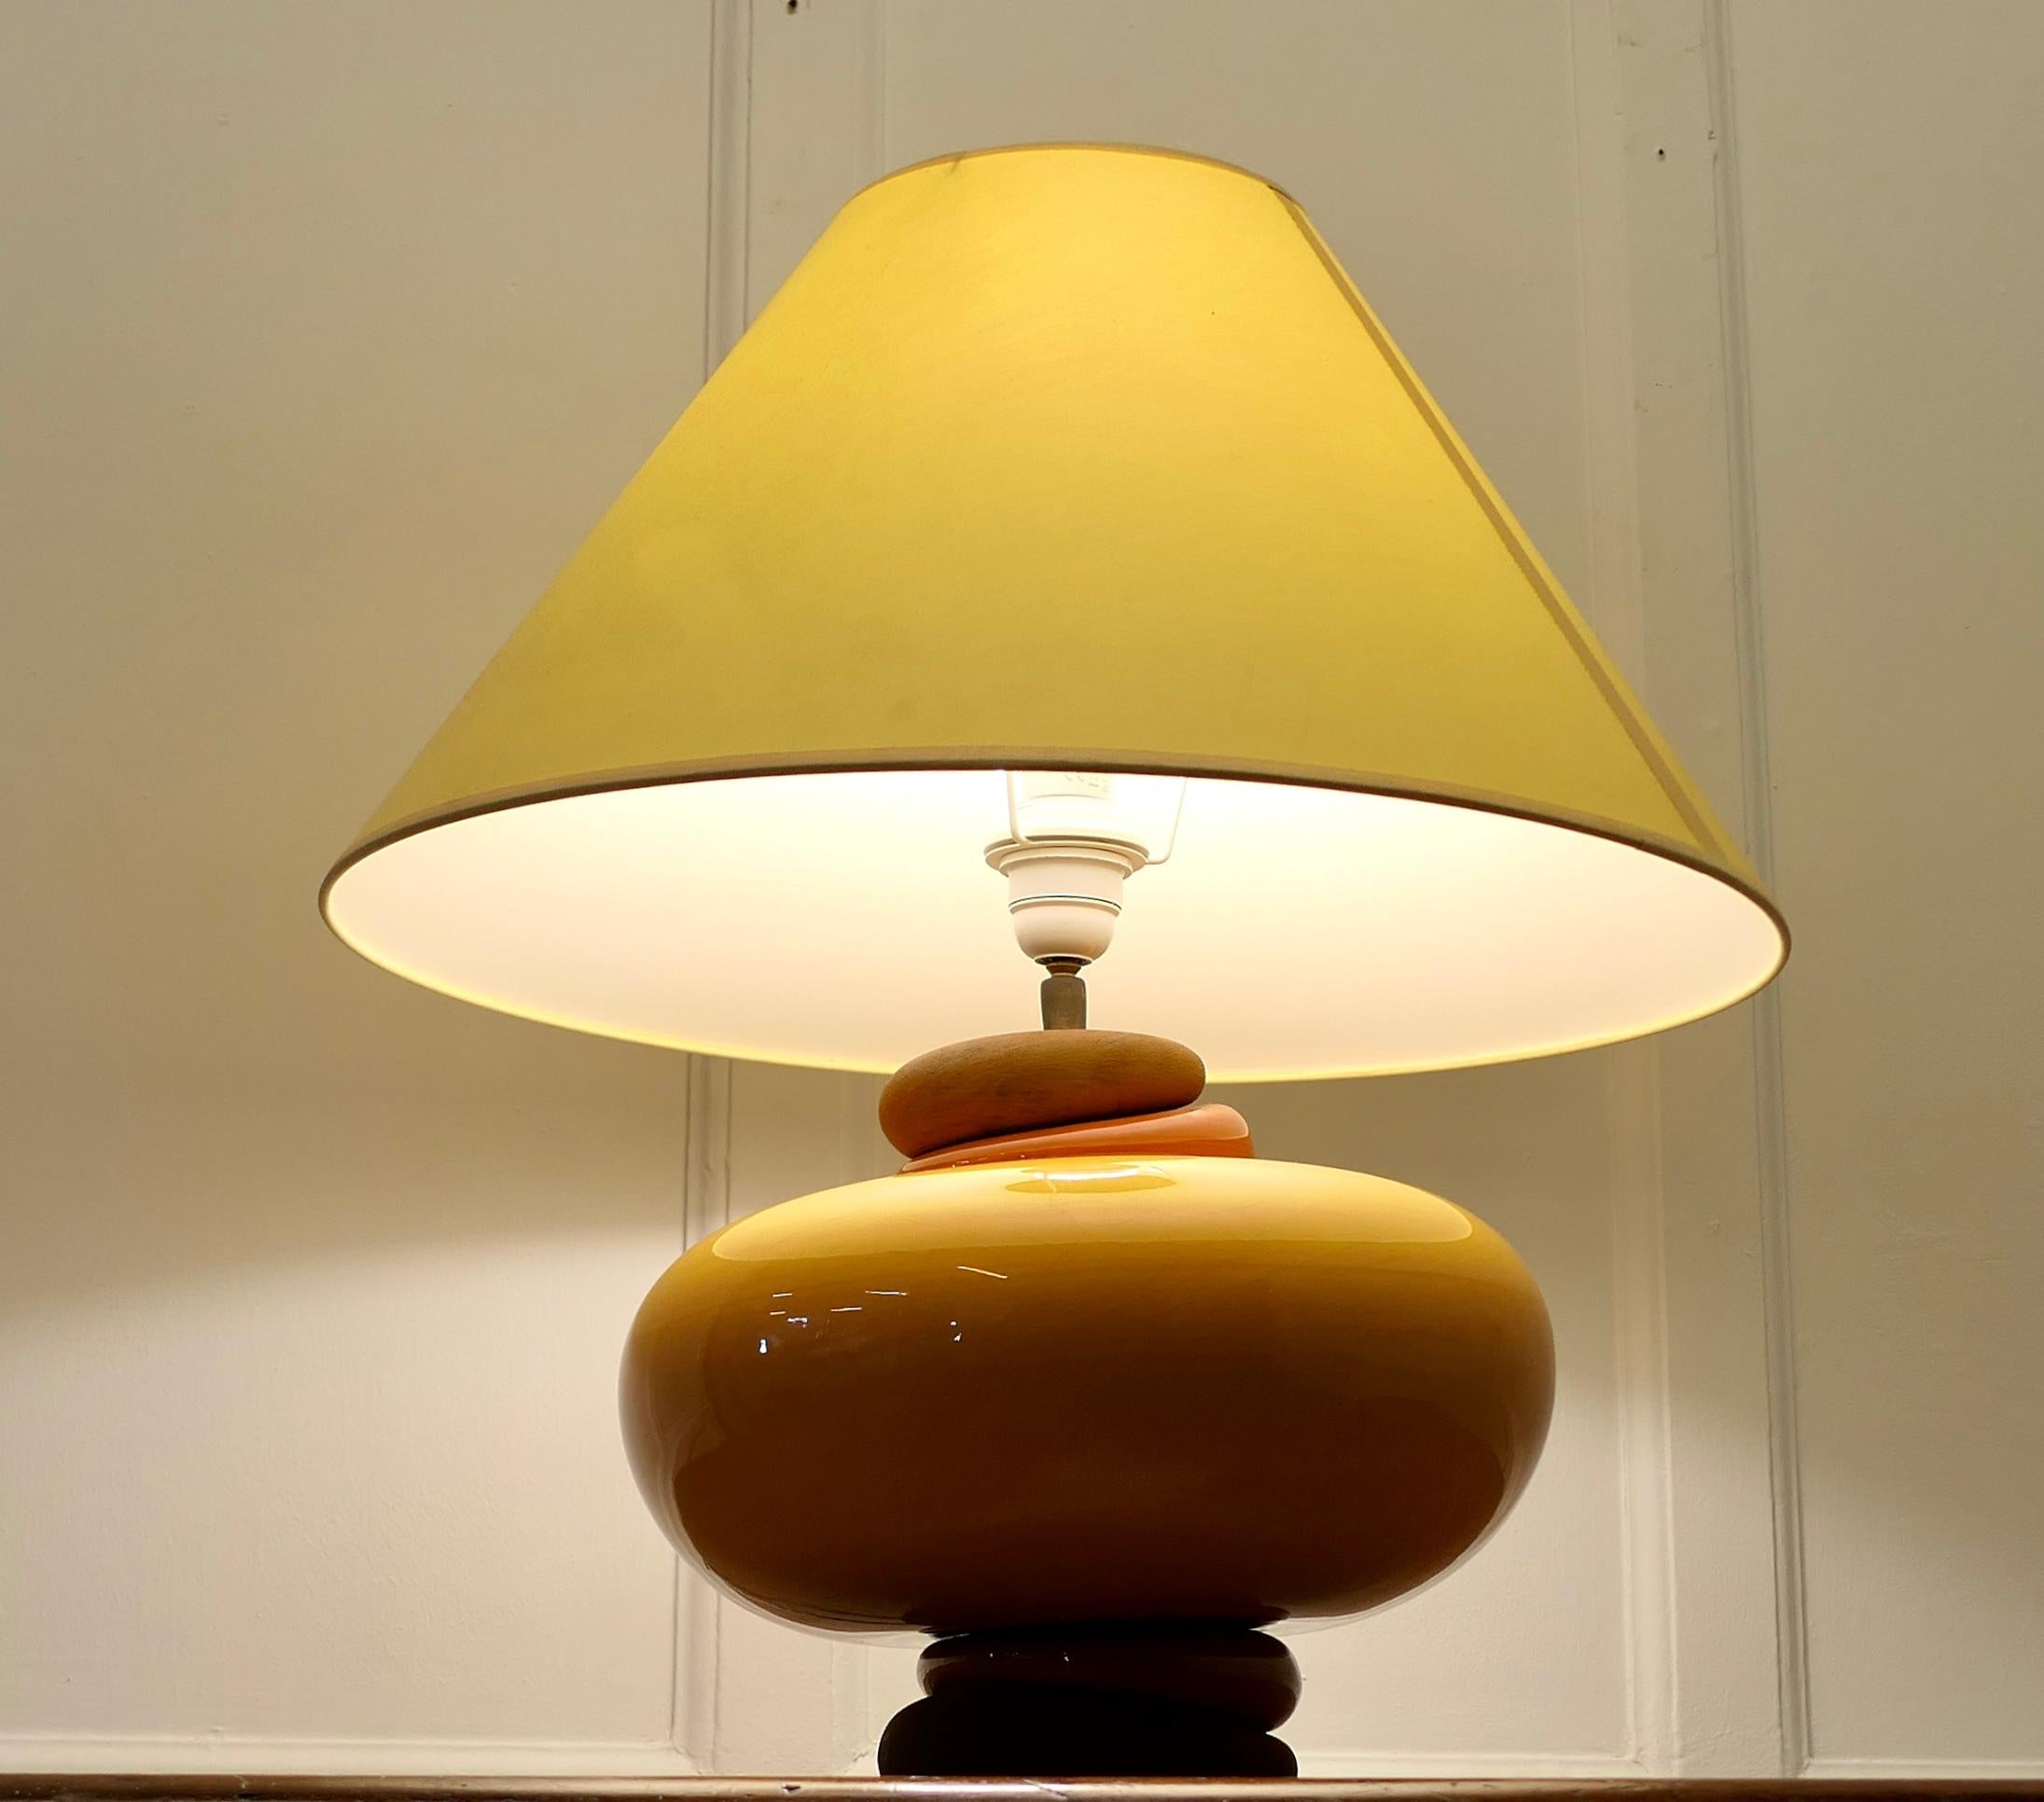 Eine große Lampe aus Kieselstein und reichlich gelbem Glas für die Anrichte

Ein großes französisches Stück mit Schichten aus Glas und Kieselstein, die Lampe ist in hellen Sommerfarben gehalten und hat einen gelben Coolie-Lampenschirm
Alles in